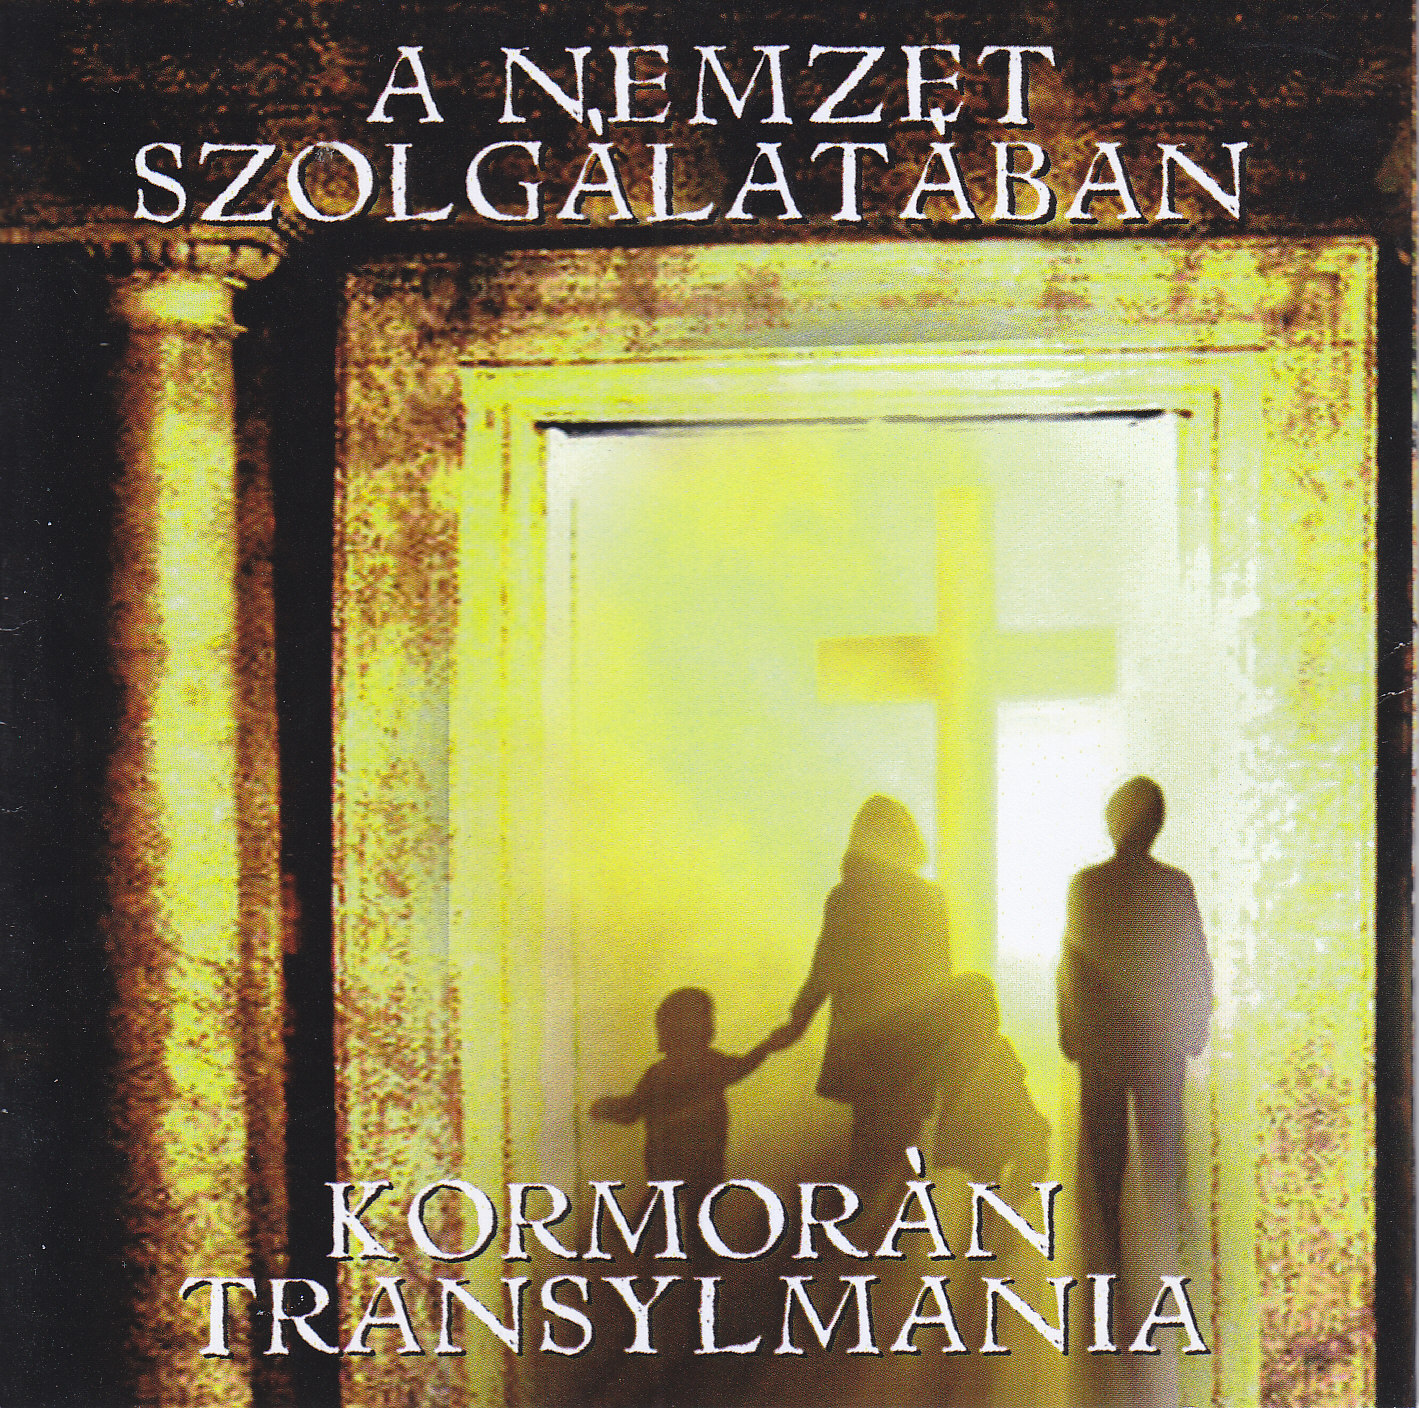 Kormorán / Transylmania - A nemzet szolgálatában